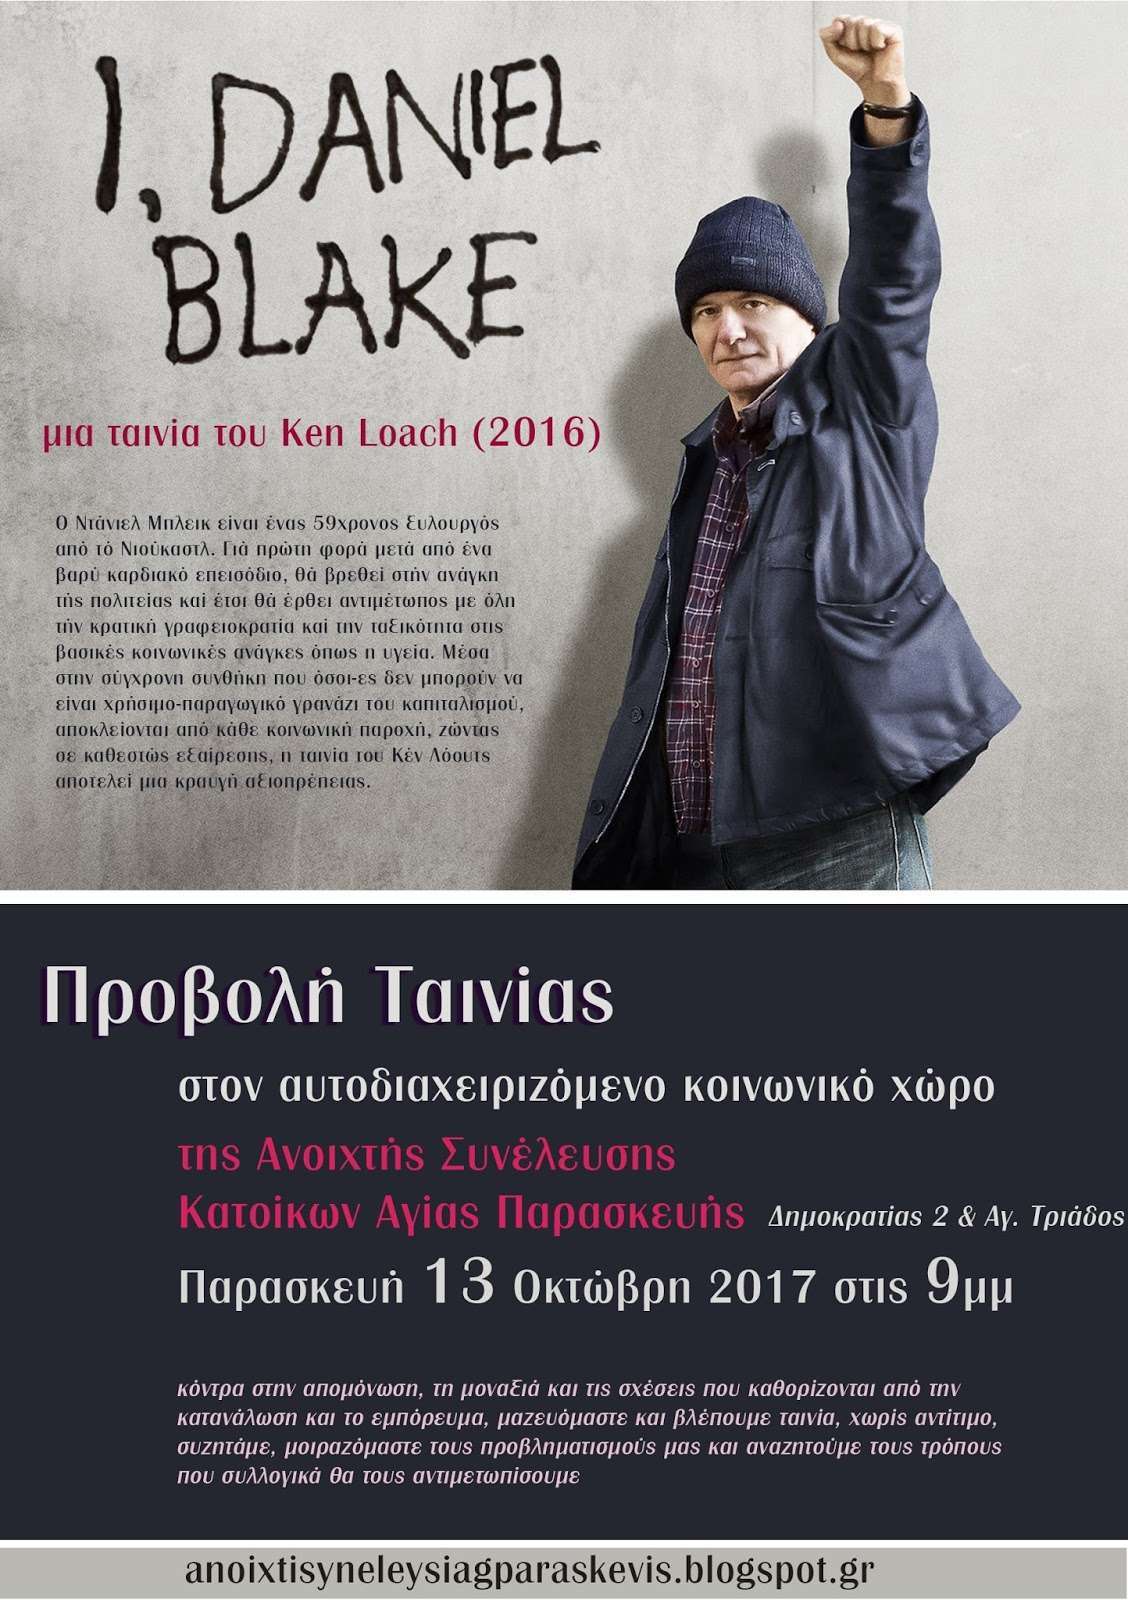 Αγ. Παρασκευή: Προβολή Ταινίας “I Daniel Blake”